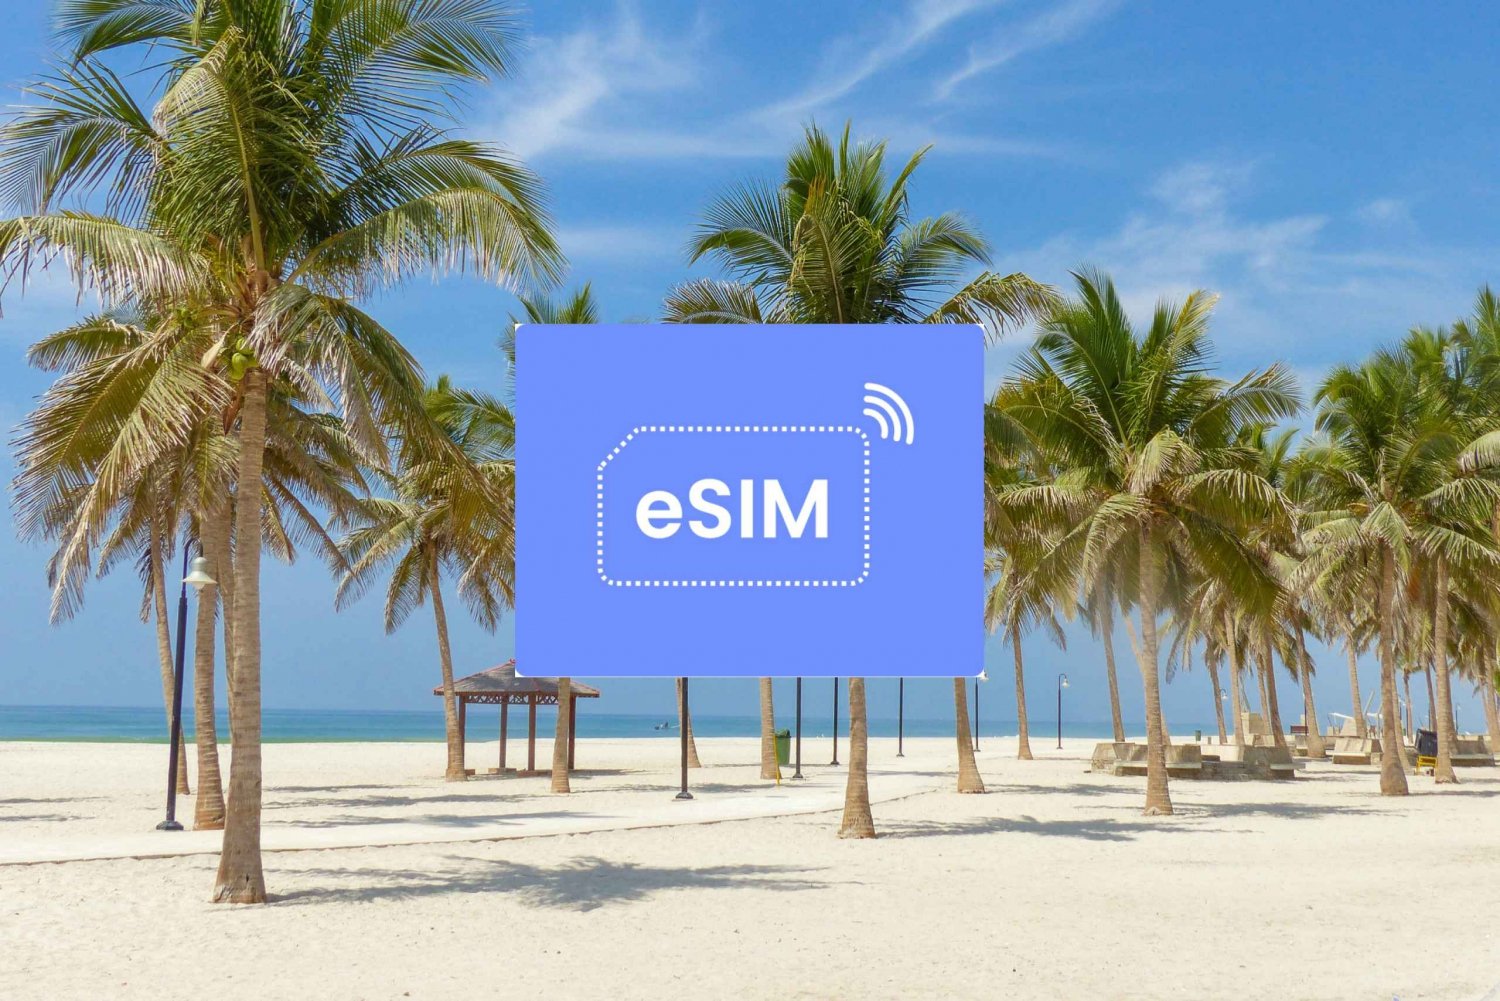 Salalah: Omán eSIM Roaming Plan de datos móviles